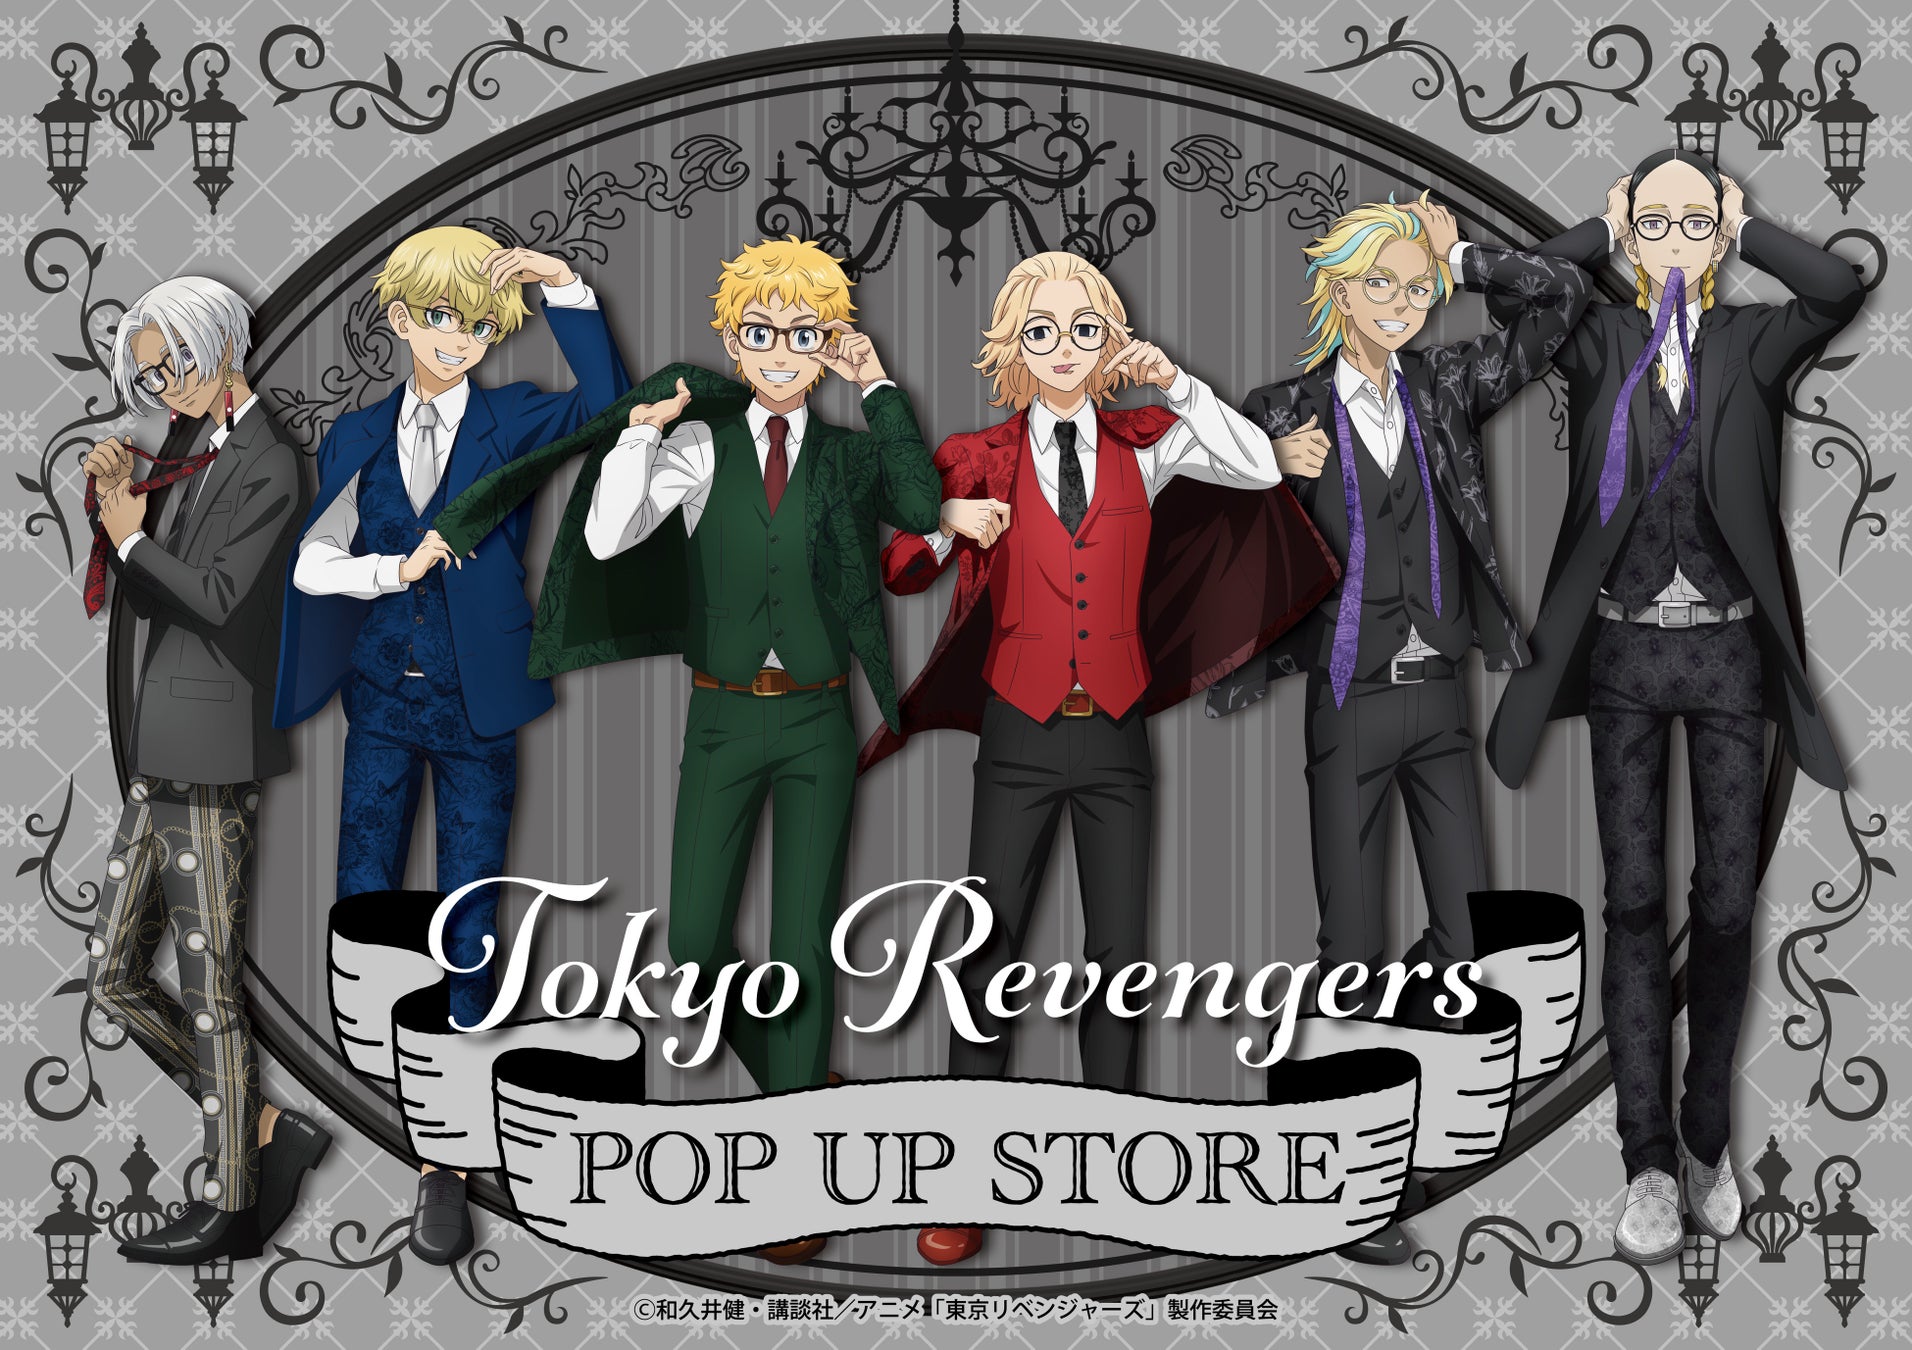 TVアニメ『東京リベンジャーズ』POP UP STORE in GiGOが全国5店舗で開催決定！テーマは「Classic」眼鏡姿の描き下ろしイラスト商品を先行販売いたします。